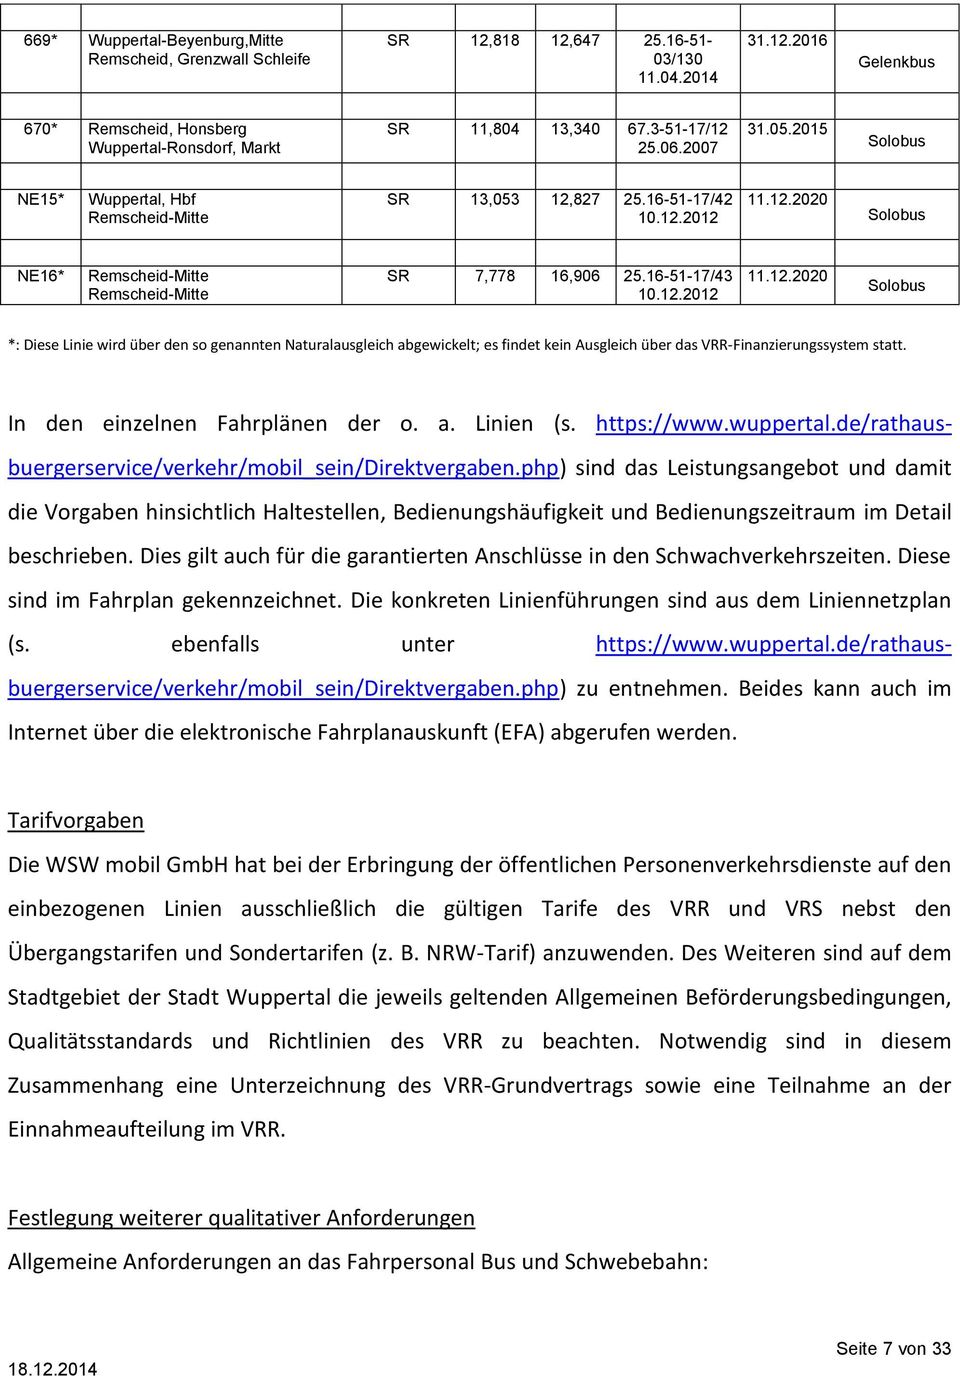 In den einzelnen Fahrplänen der o. a. Linien (s. https://www.wuppertal.de/rathausbuergerservice/verkehr/mobil_sein/direktvergaben.